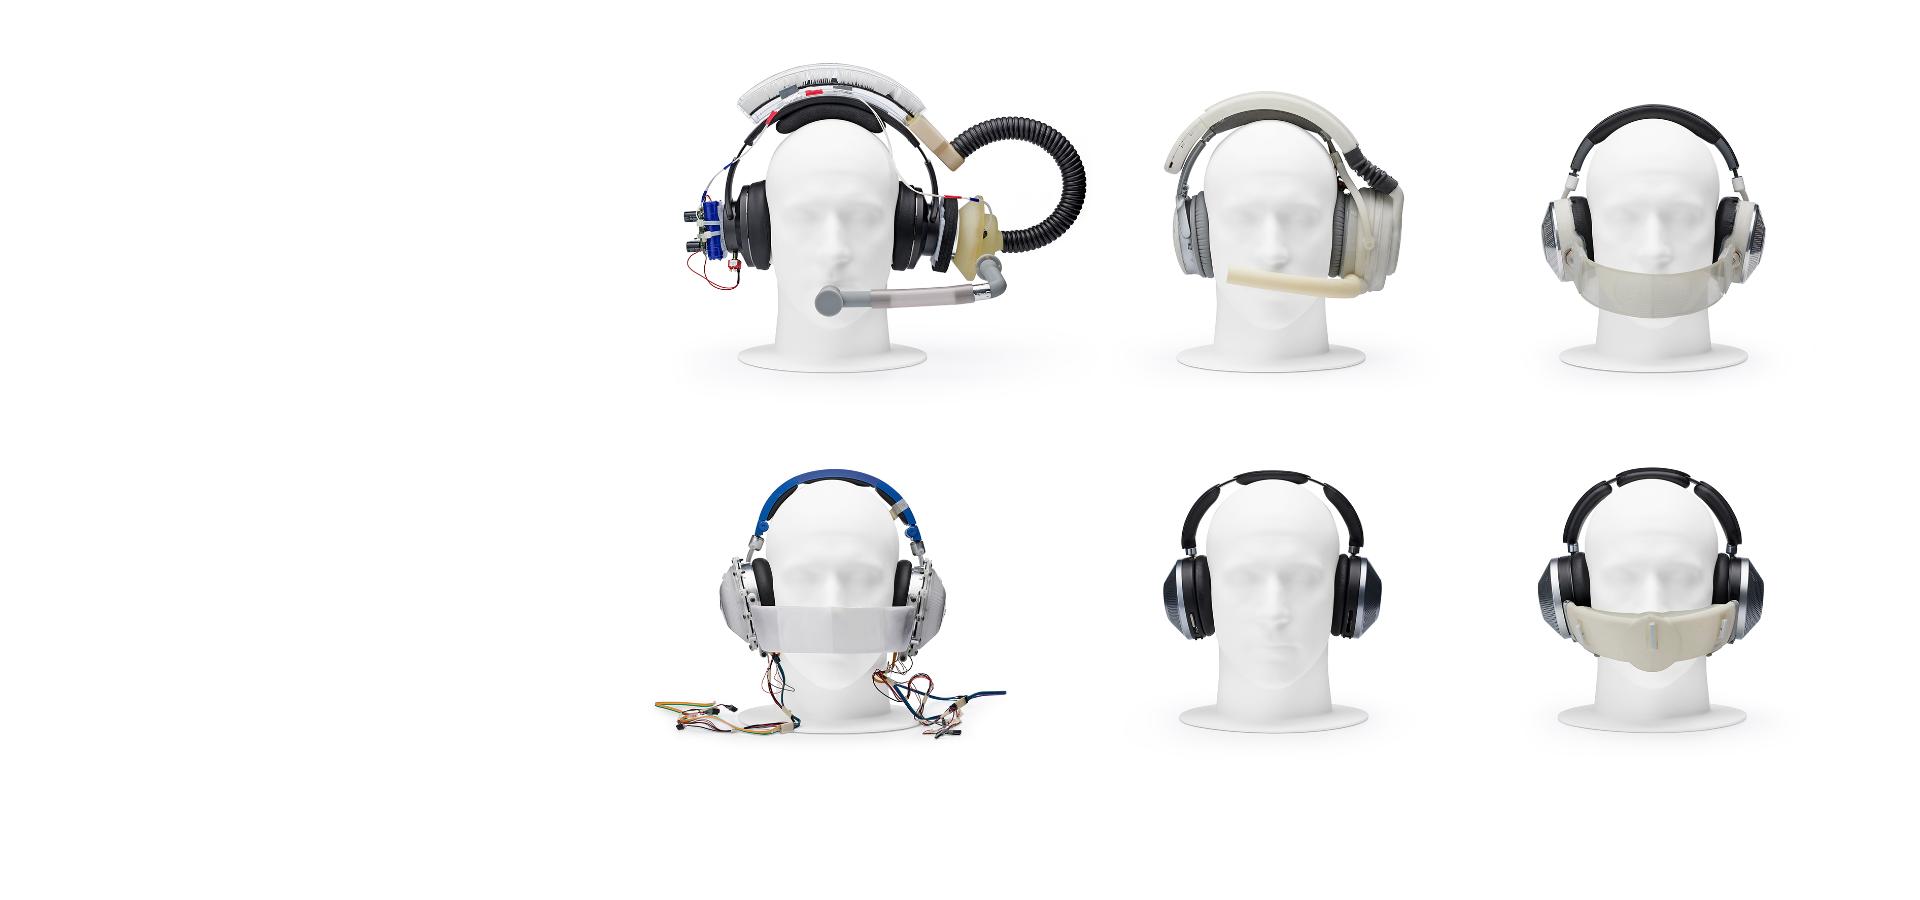 Cztery głowy manekina z różnymi prototypowymi słuchawkami.